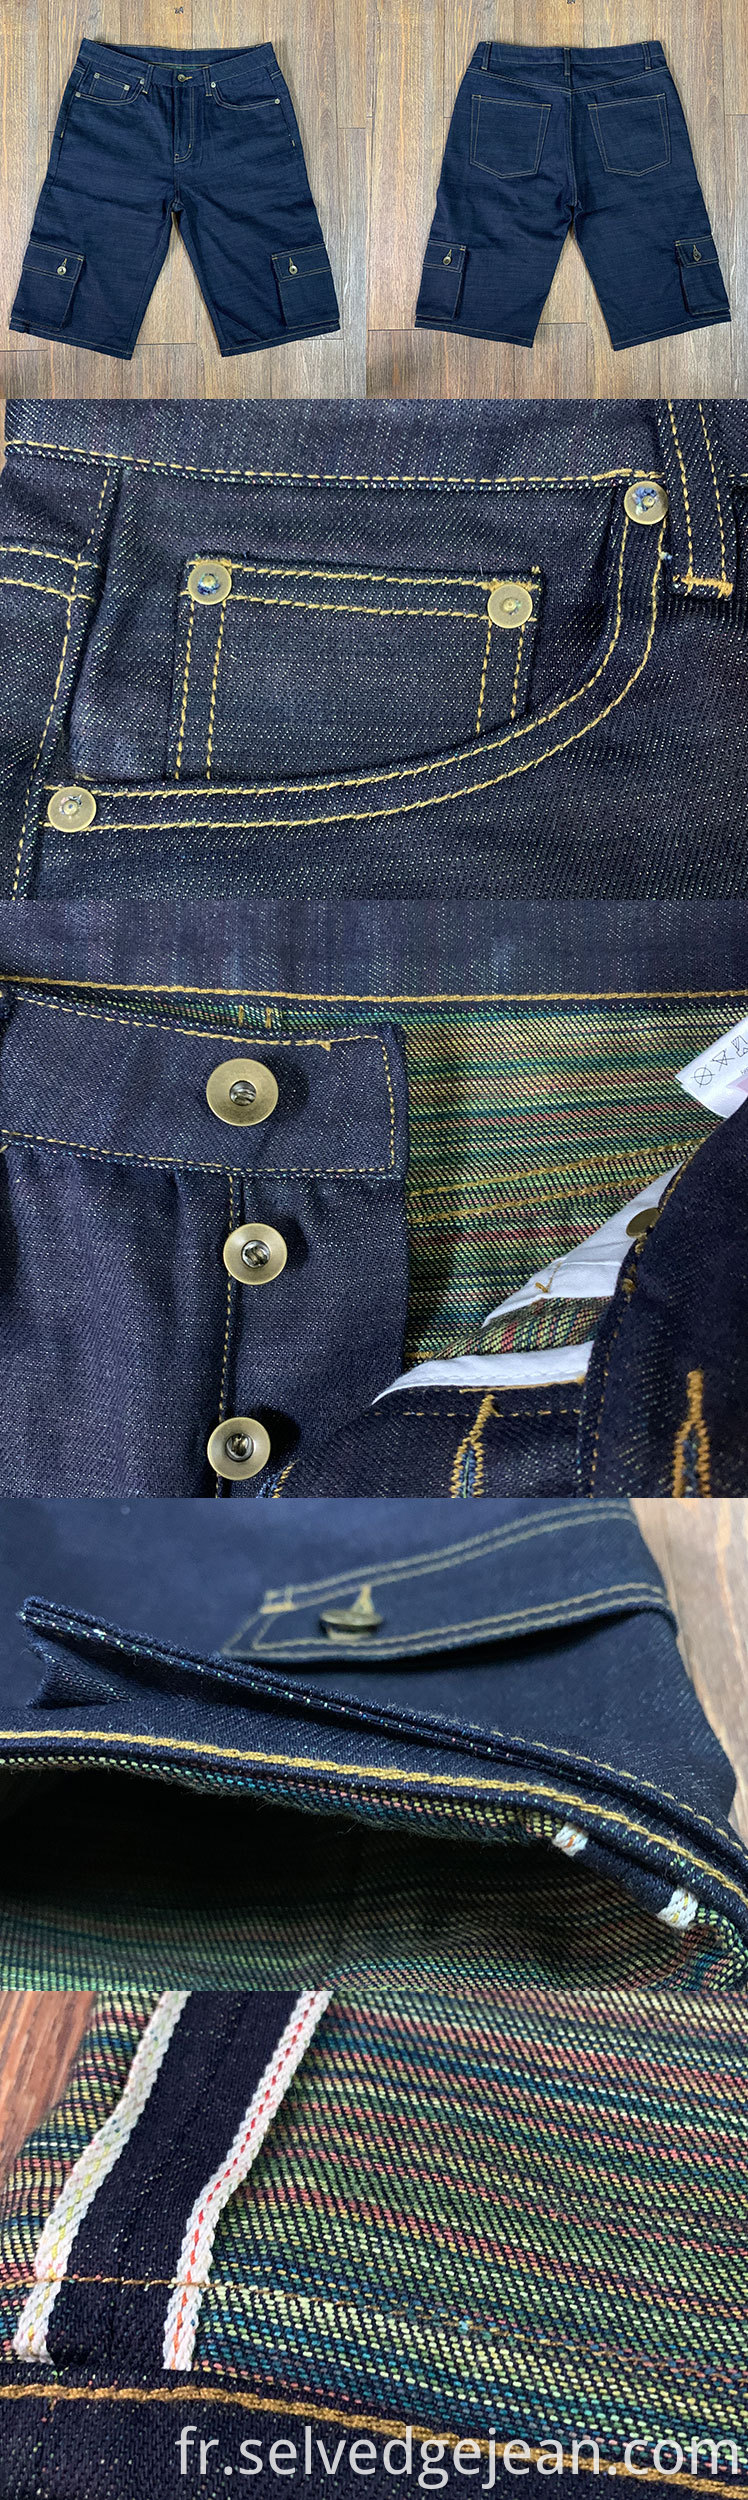 jeans japonais personnalisés selvage indigo bonbons waft 12 oz pantalon de cargaison multifonction vintage short denim brut vintage pour hommes femmes